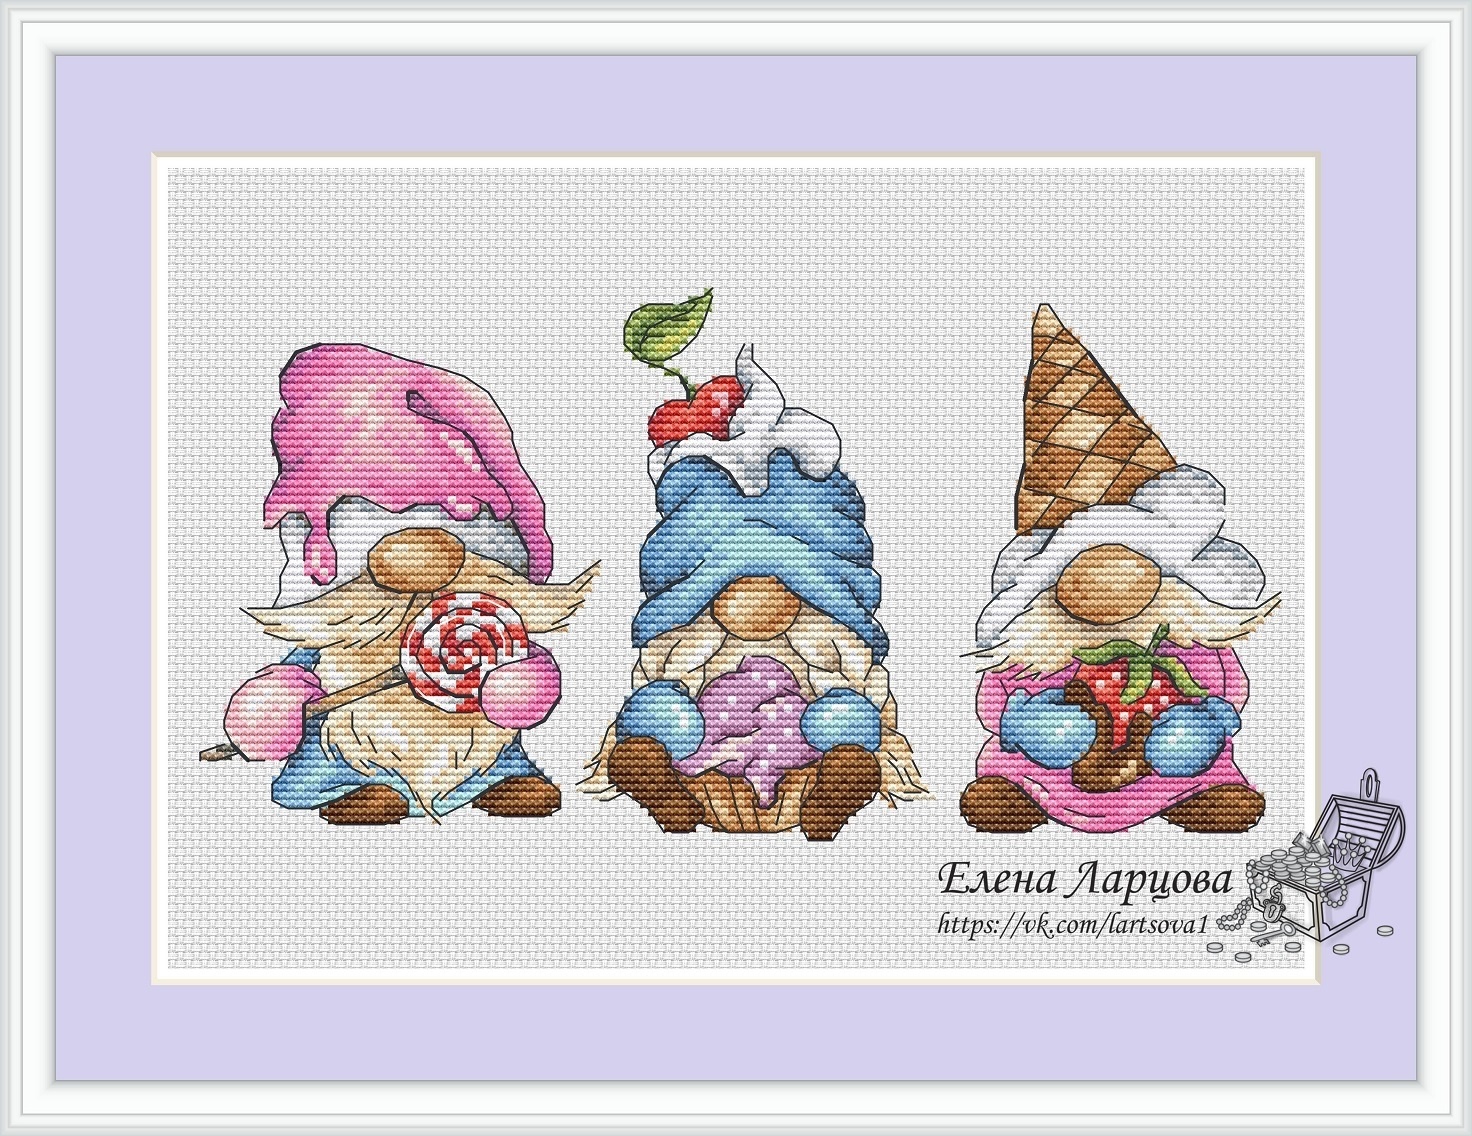 Kitchen gnomes cross stitch pattern, Gnome cook cross stitch